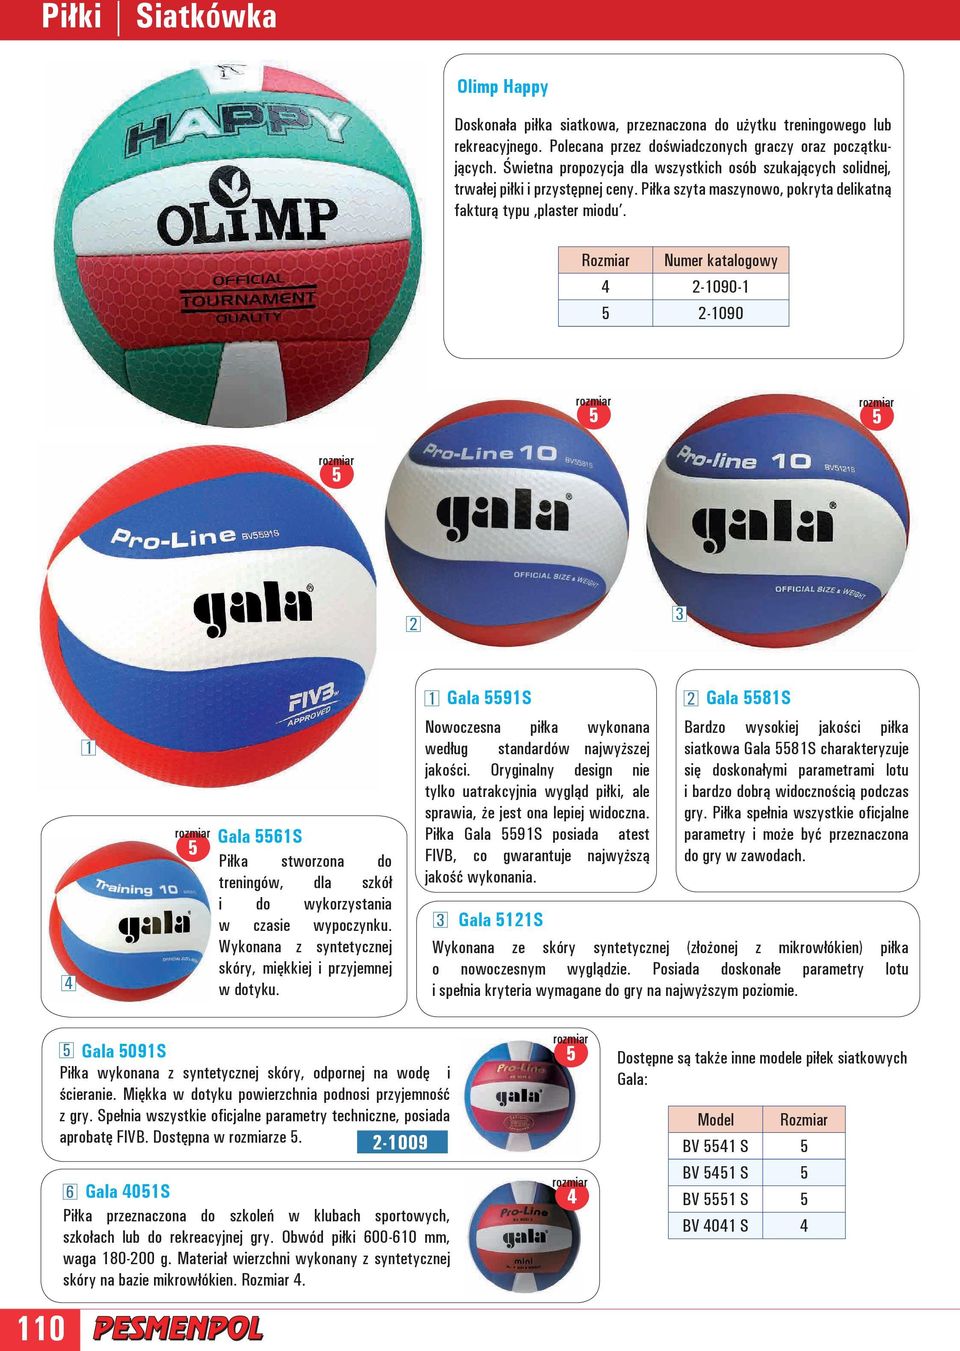 Rozmiar Numer katalogowy 4 2-1090-1 2-1090 2 3 4 1 Gala 61S Piłka stworzona do treningów, dla szkół i do wykorzystania w czasie wypoczynku.